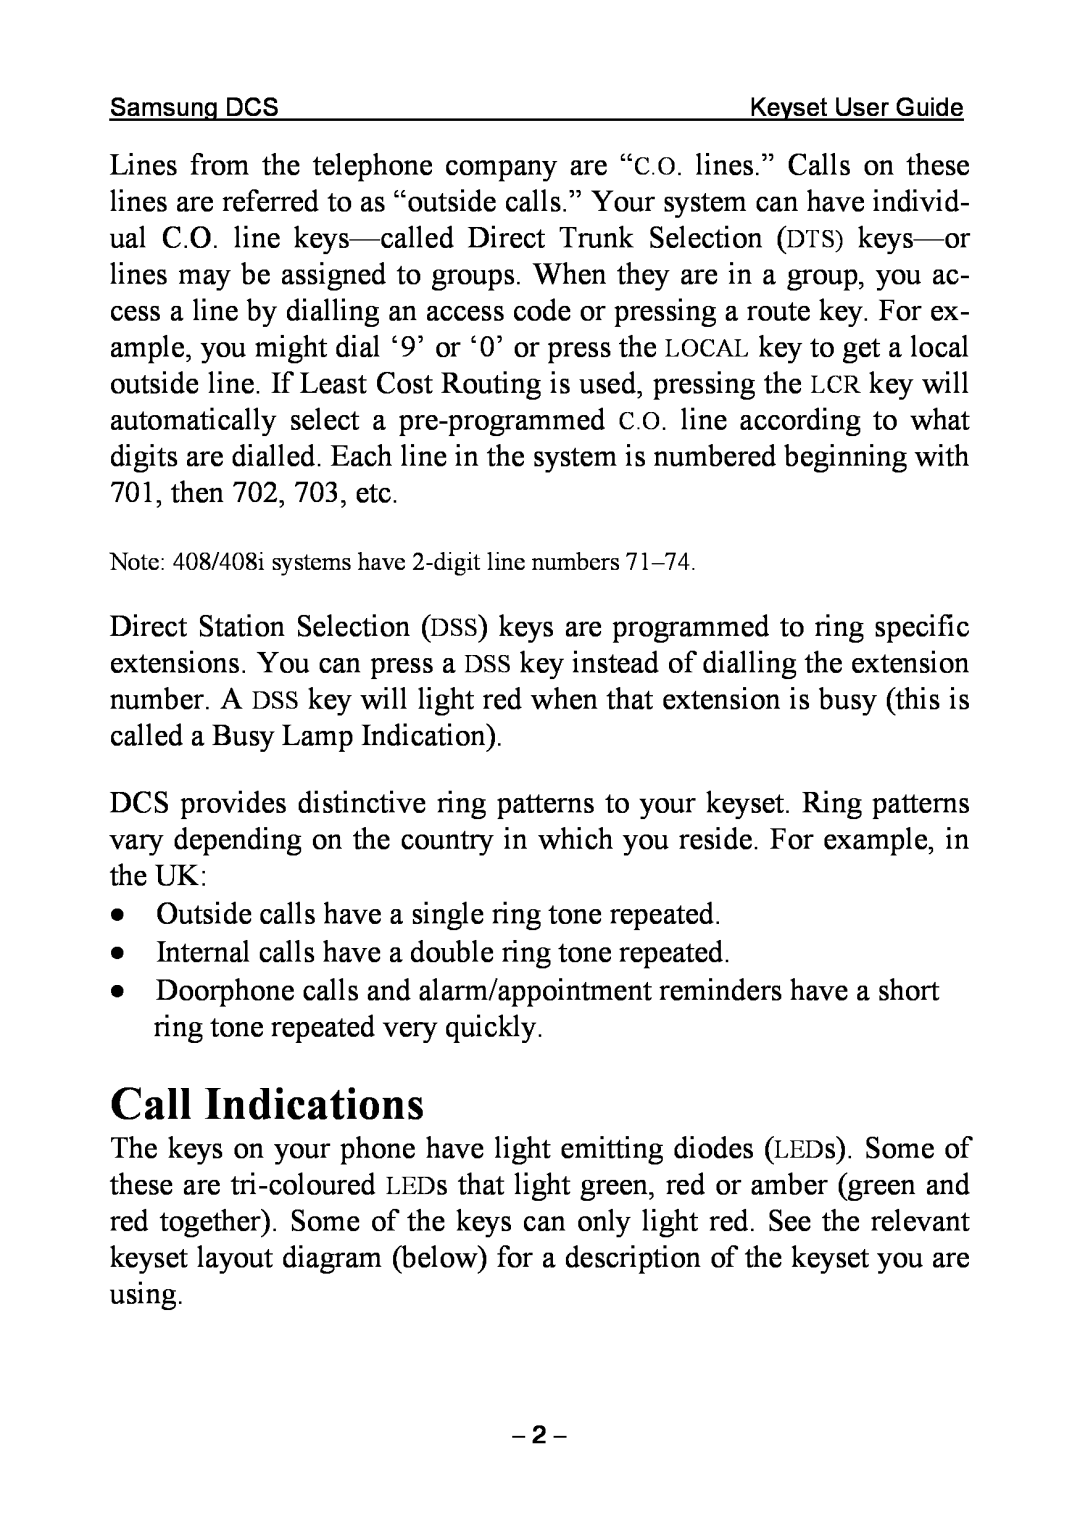 Samsung DCS KEYSET manual Call Indications 